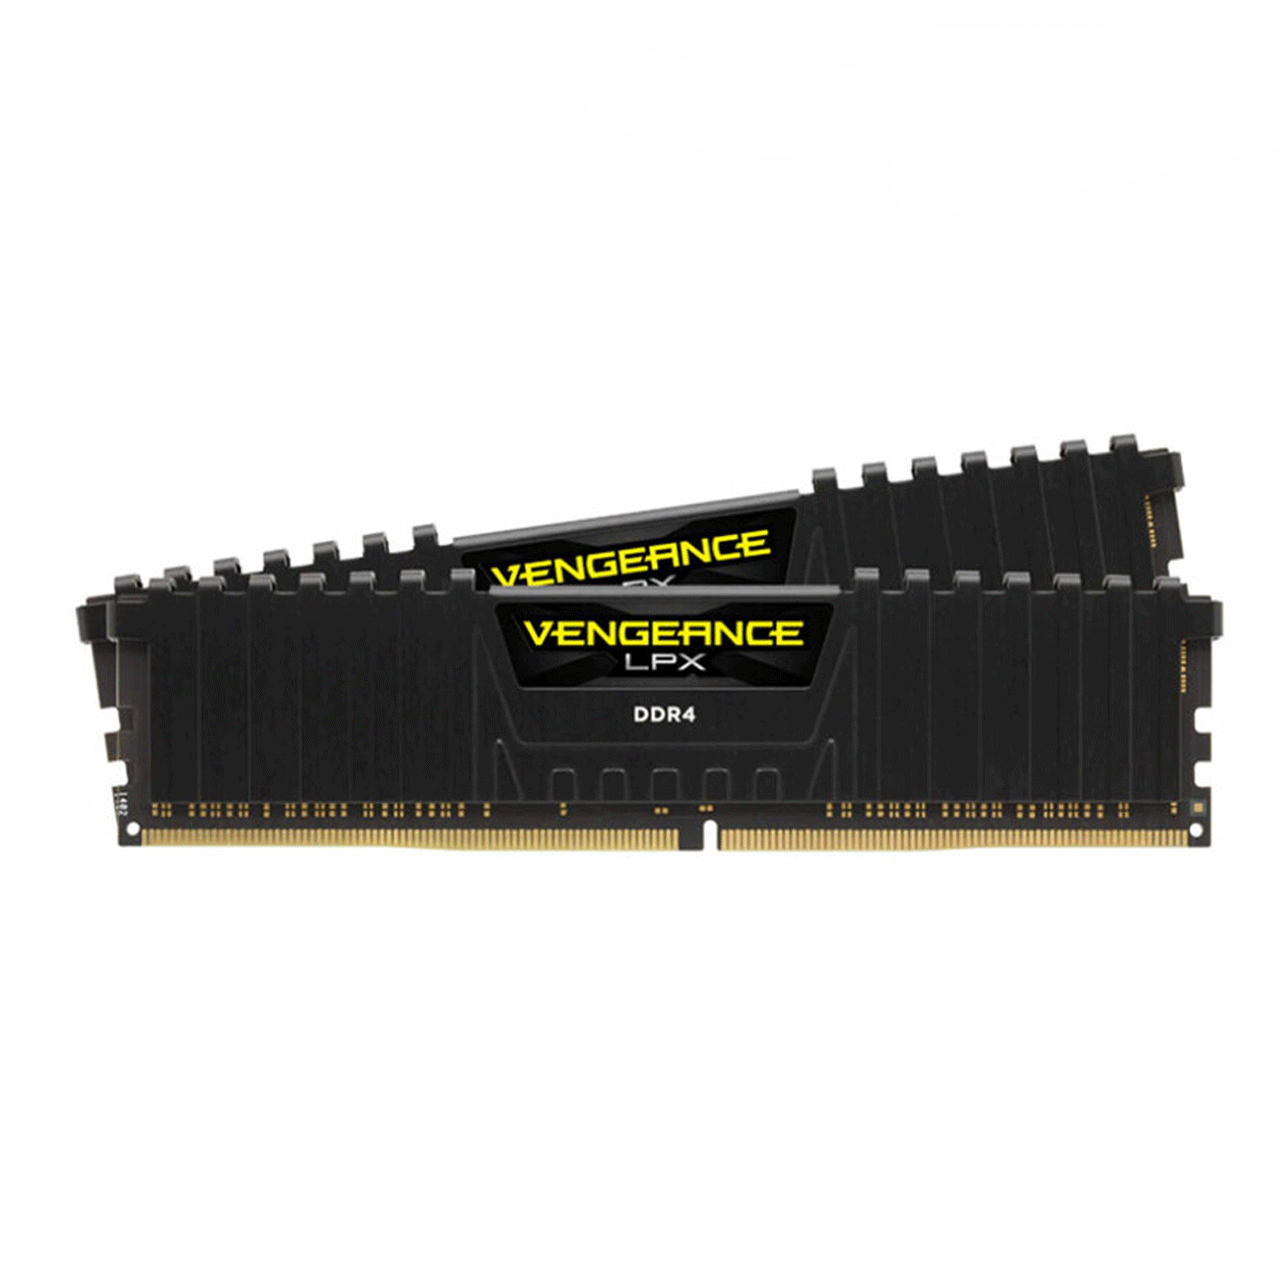 RAM-Corsair-Vengeance-LPX-DDR4-8GB-3200MHz--CL16-Single-Channel-Desktop